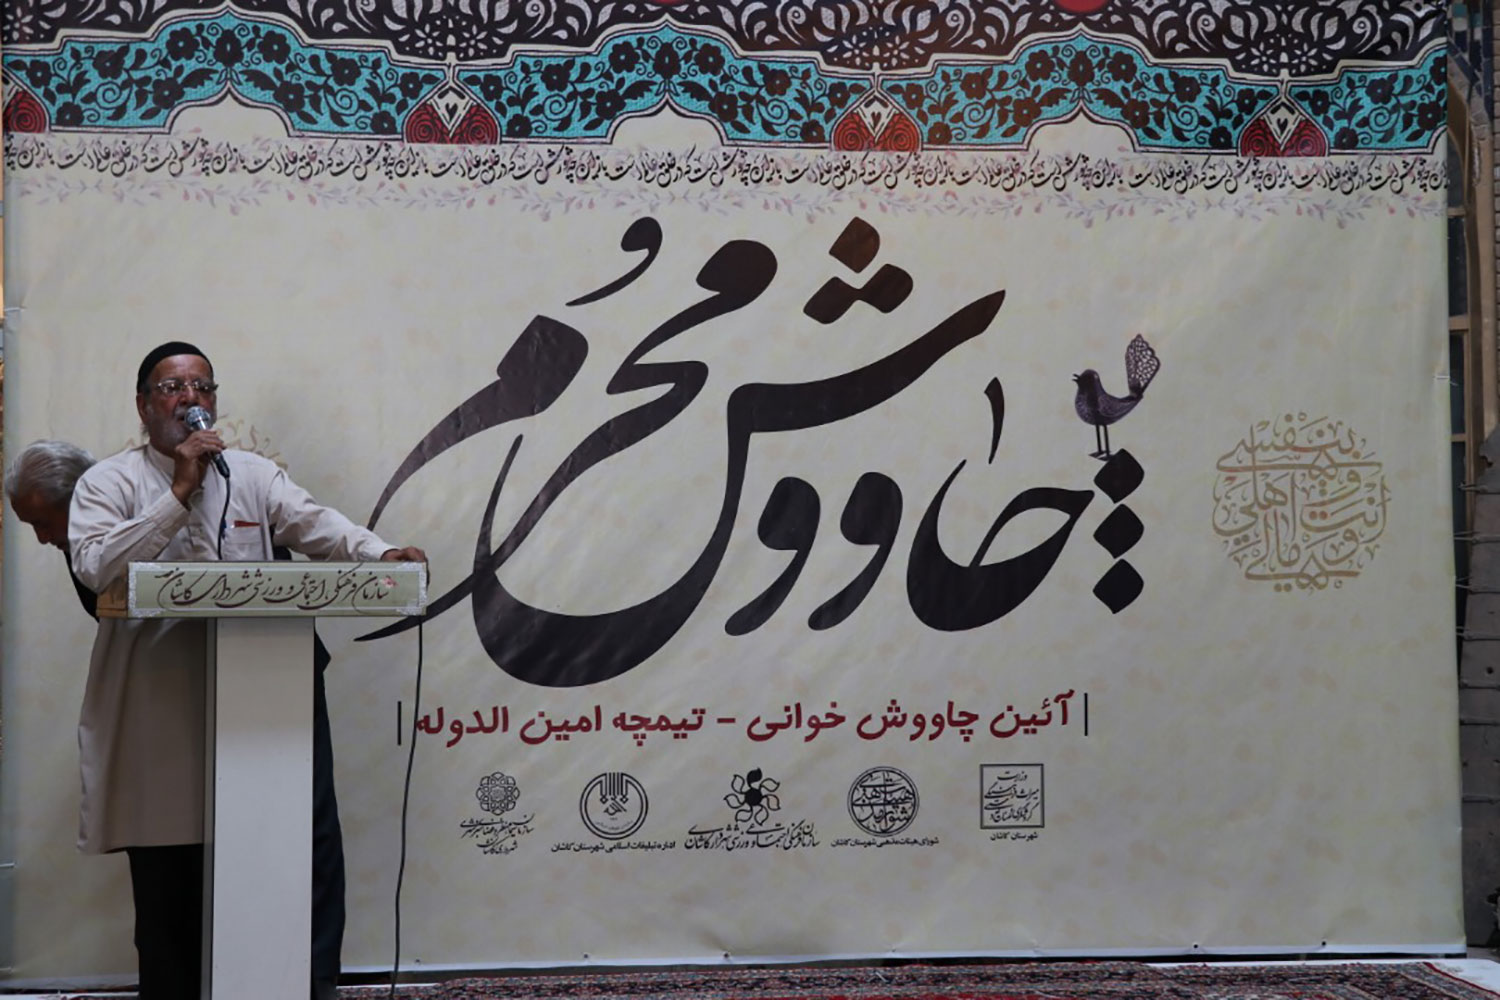 آیین برفراشتن چادر حسینیه ارشاد علیا در شهر نطنز